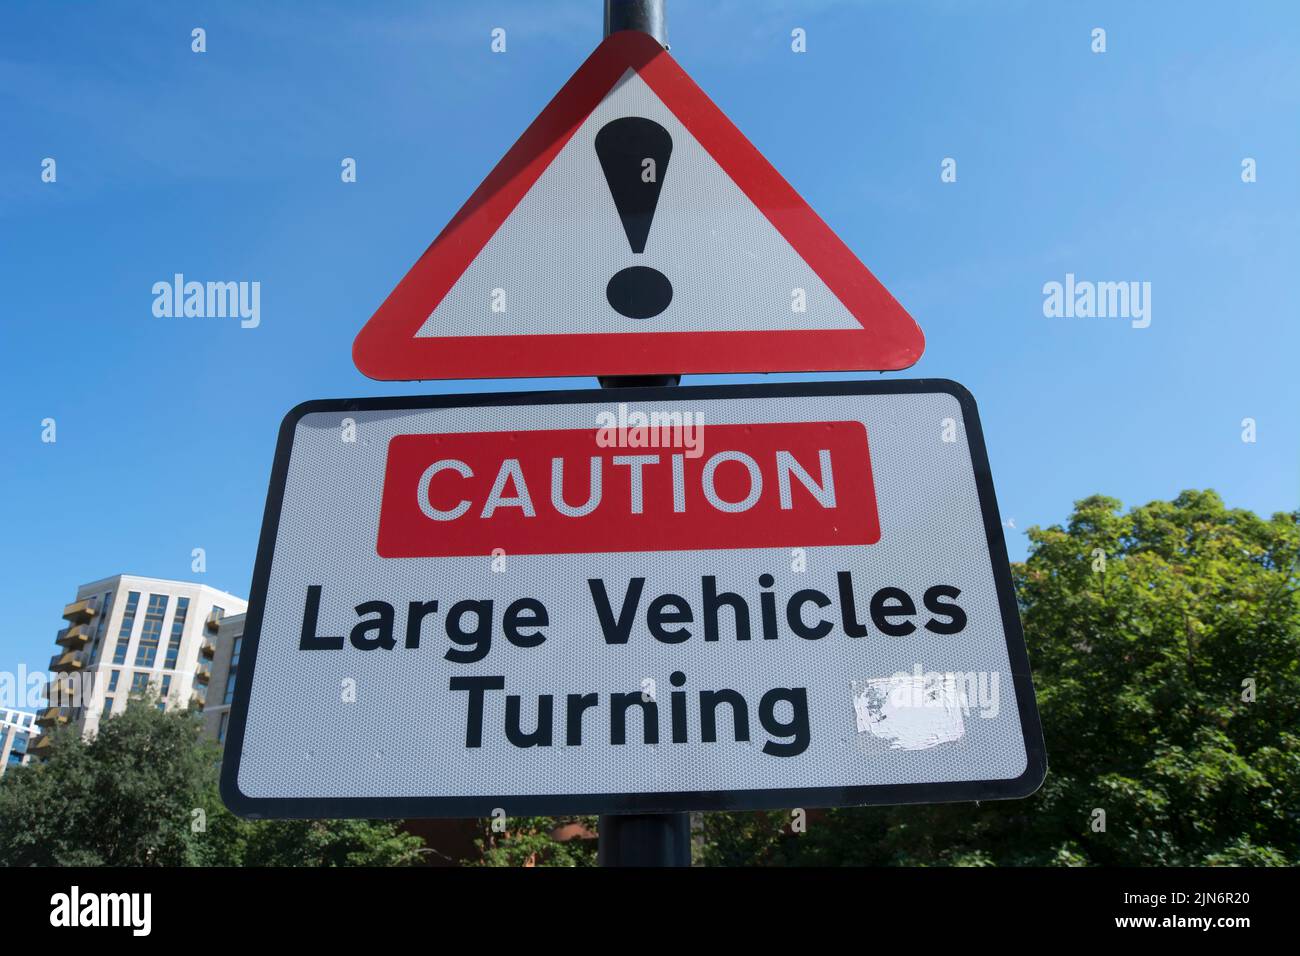 señales de tráfico británicas, un signo de exclamación y una advertencia de grandes vehículos girando, en brentford, londres, inglaterra Foto de stock